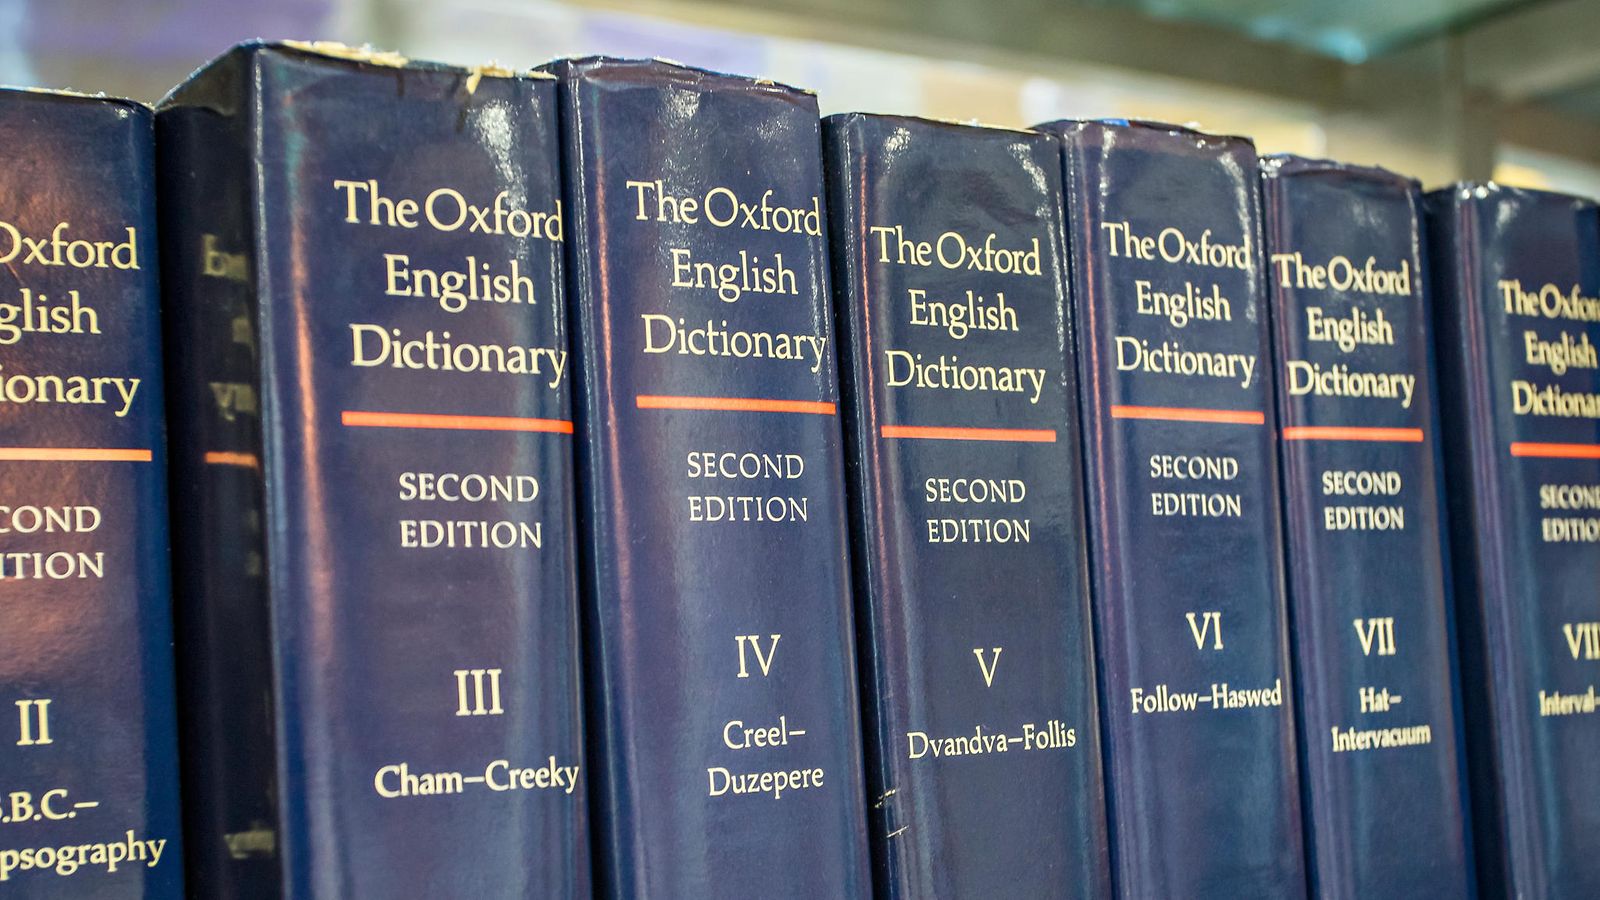 Oxfordin sanakirja ei voinut nimetä vuoden sanaa koronavuonna 2020 -  